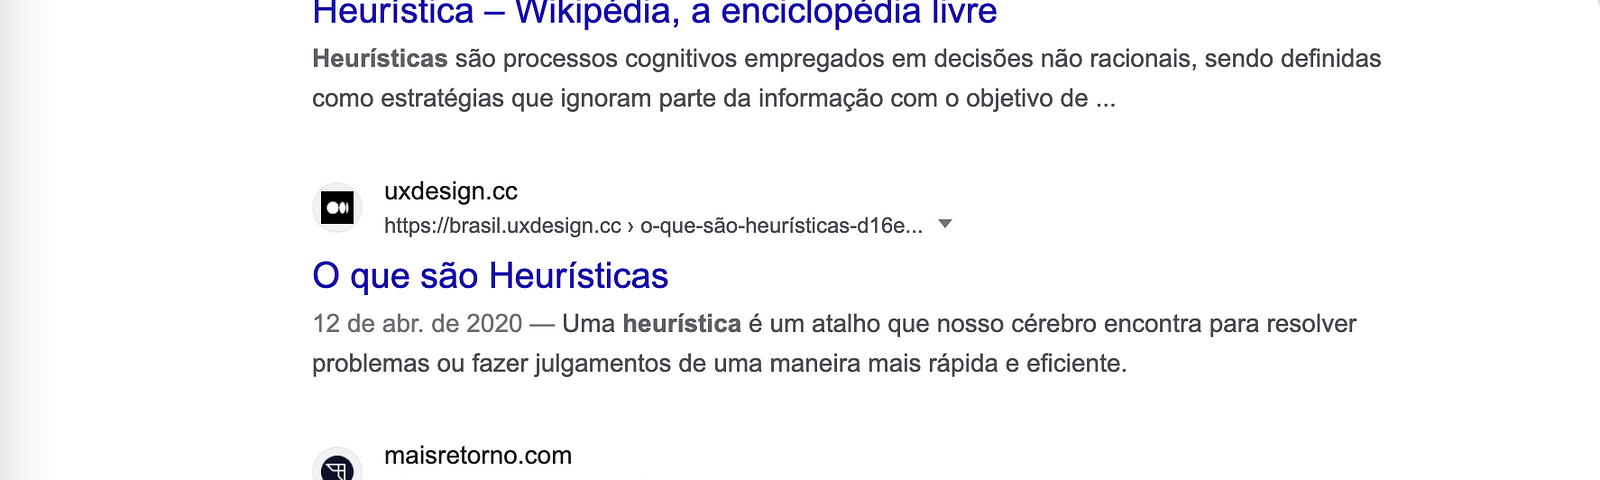 Galvão Bueno – Wikipédia, a enciclopédia livre